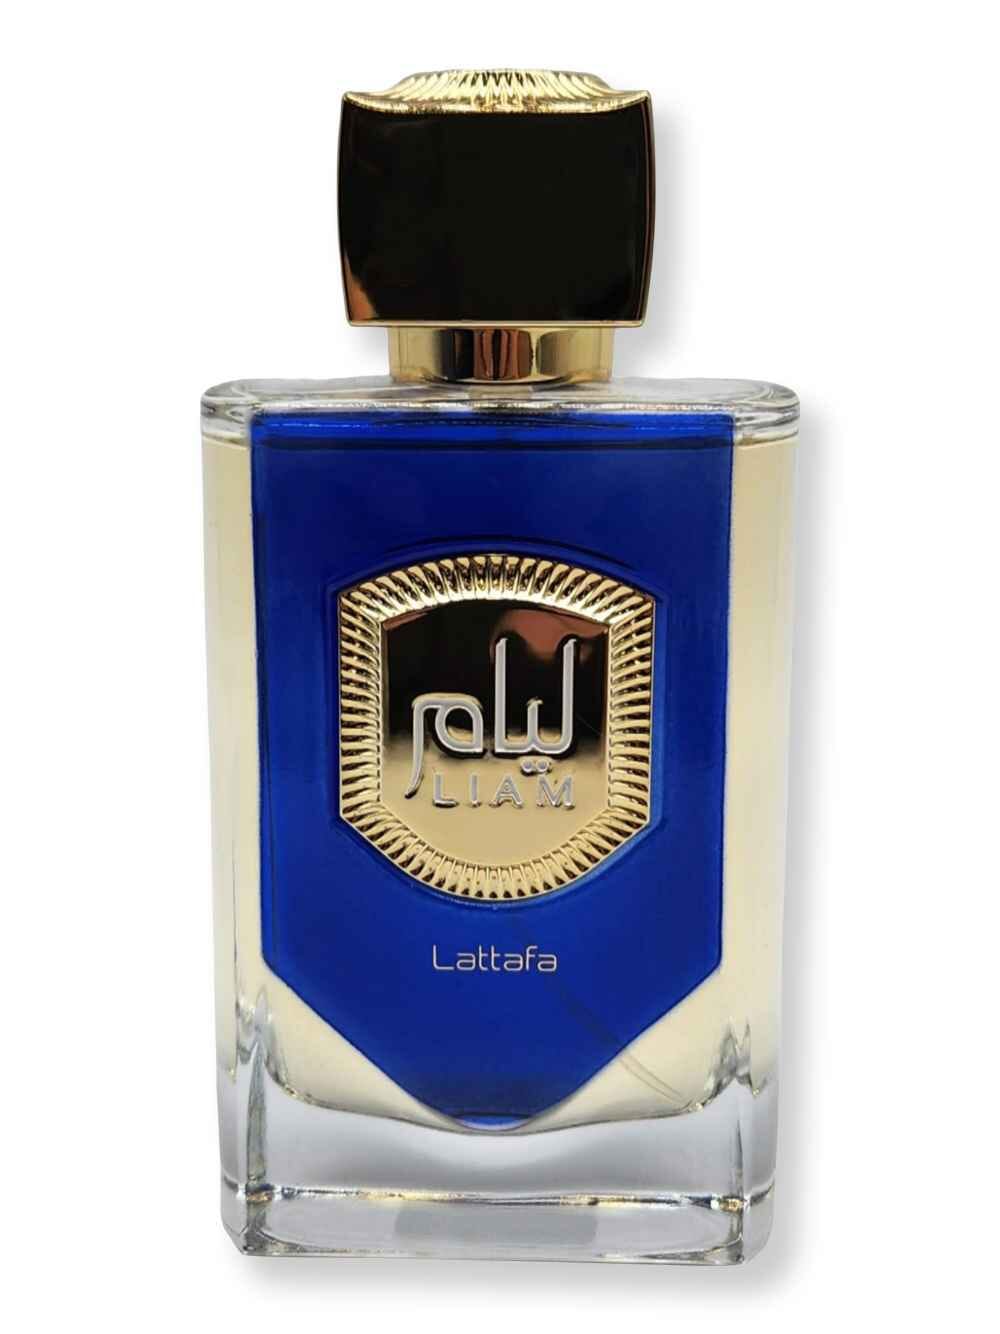 Lattafa Lattafa Liam Blue Shine EDP Spray 100 ml Perfume 